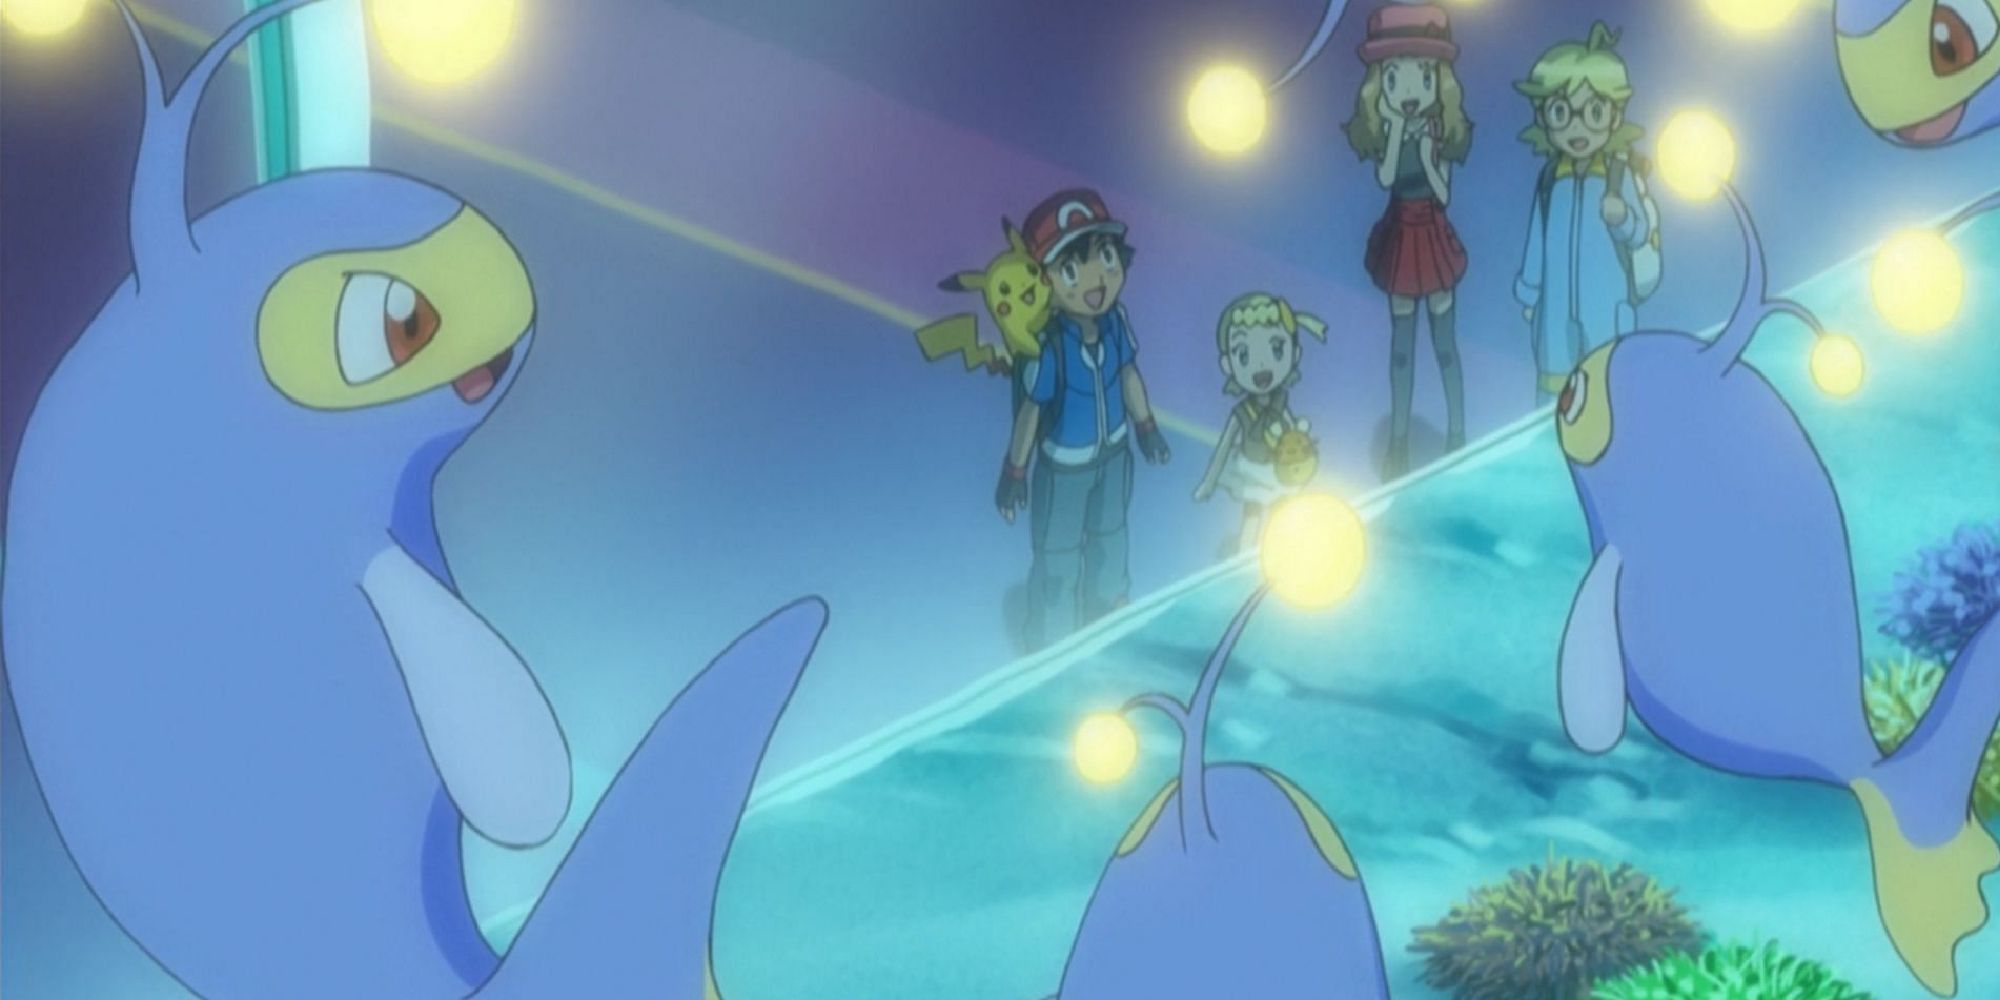 Эш, Пикачу, Серена, Клемонт и Бонни любуются аквариумом, наполненным фонарями.